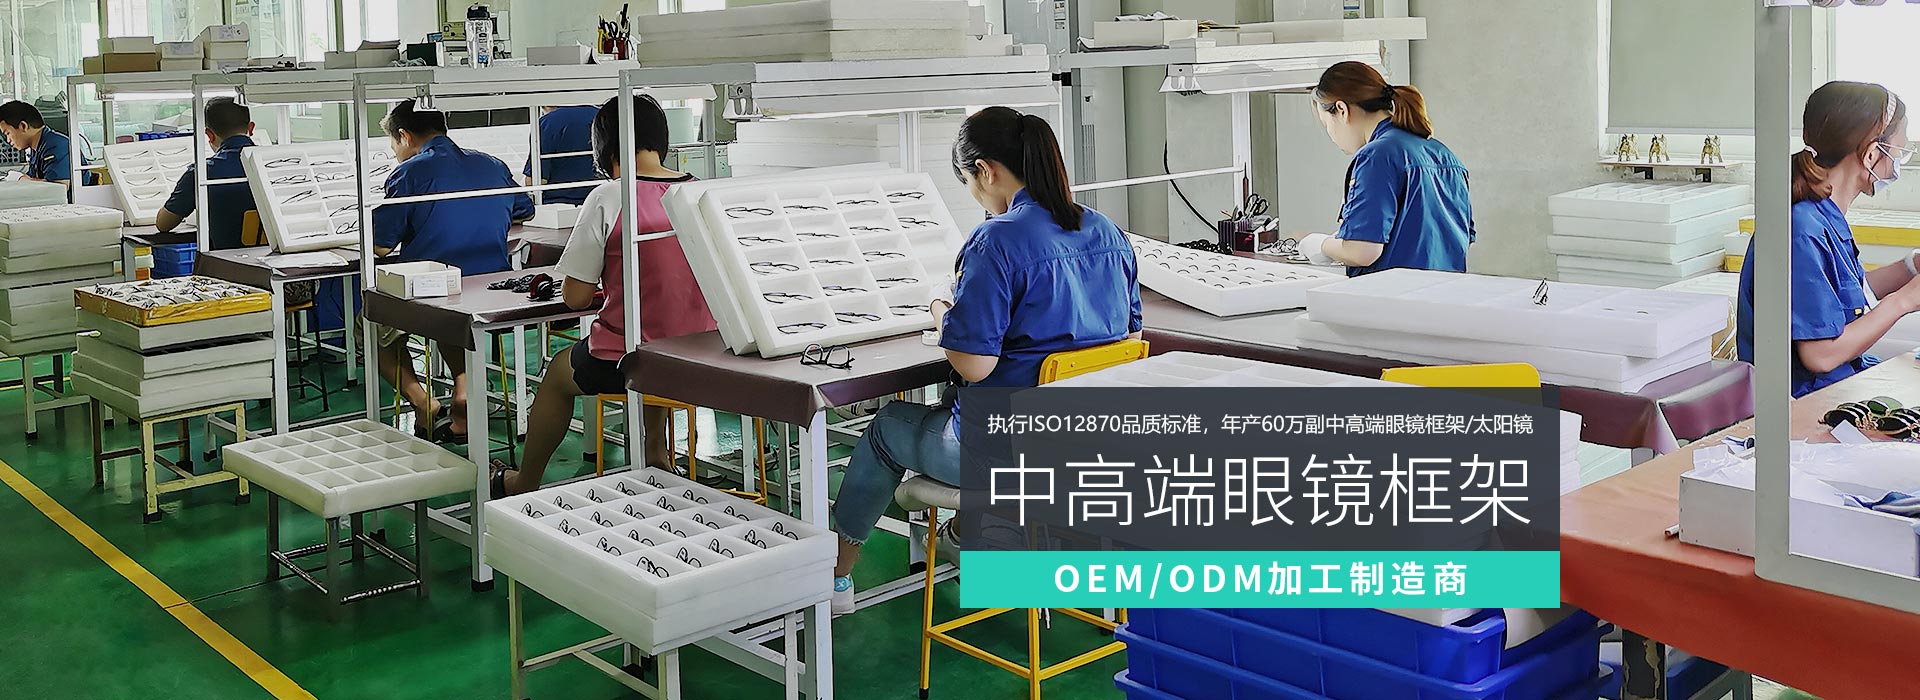 衍誠-眼鏡框架OEM/ODM加工制造商